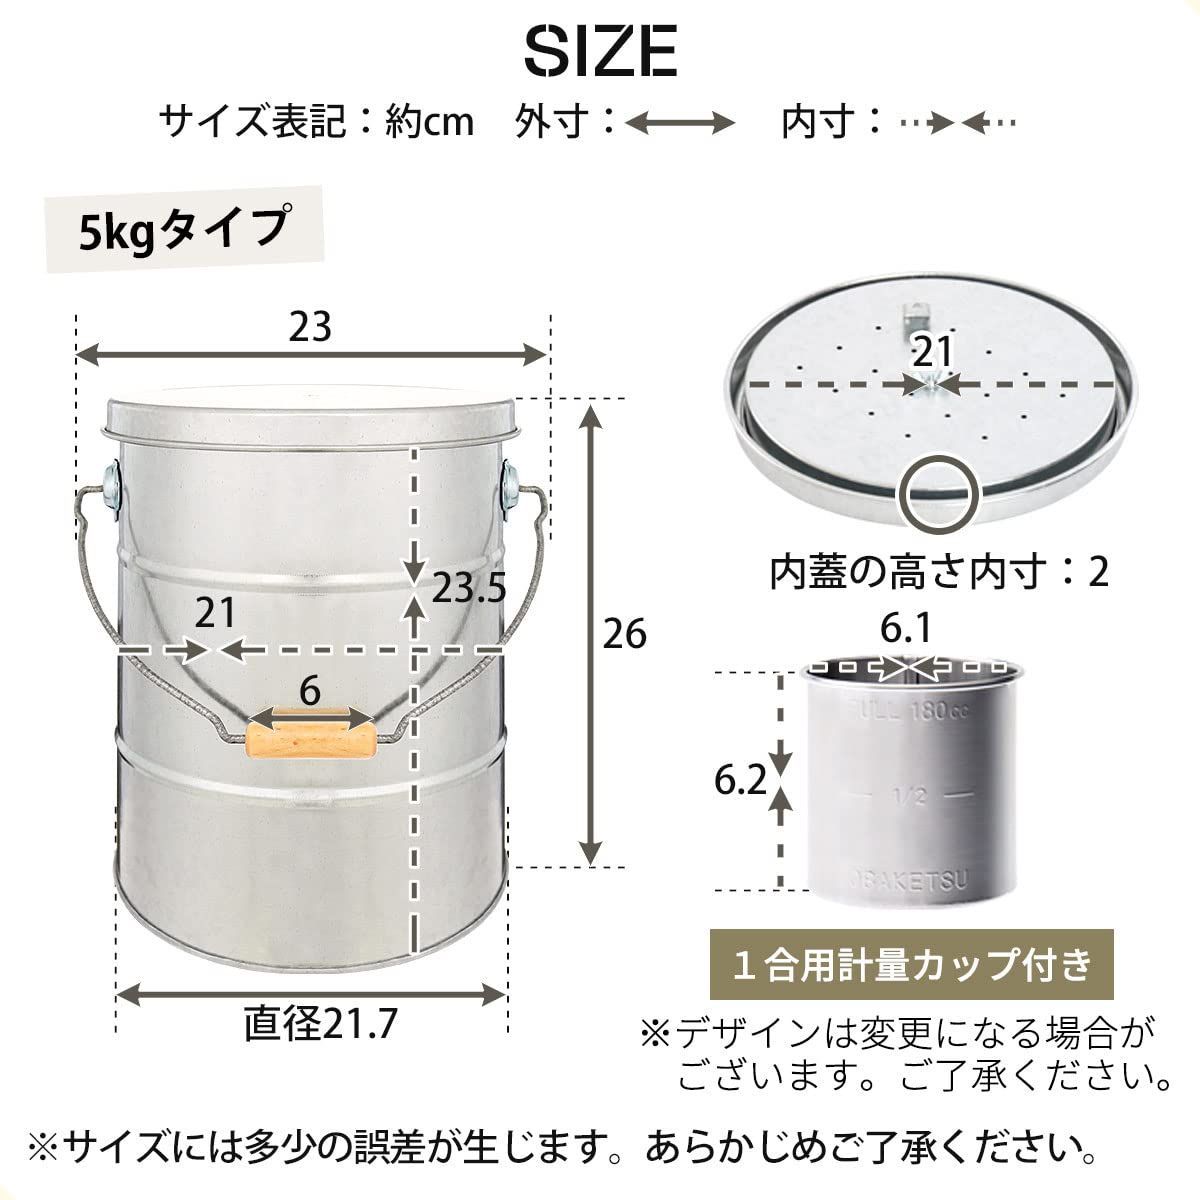 大切な 【在庫処分】お米収納 ライスストッカ― 計量カップ付き 5kg 虫よけ 日本製 湿気 密閉 酸化防止 米びつ トタン製 テレビで紹介されました  米櫃 ぼん家具 グリーン